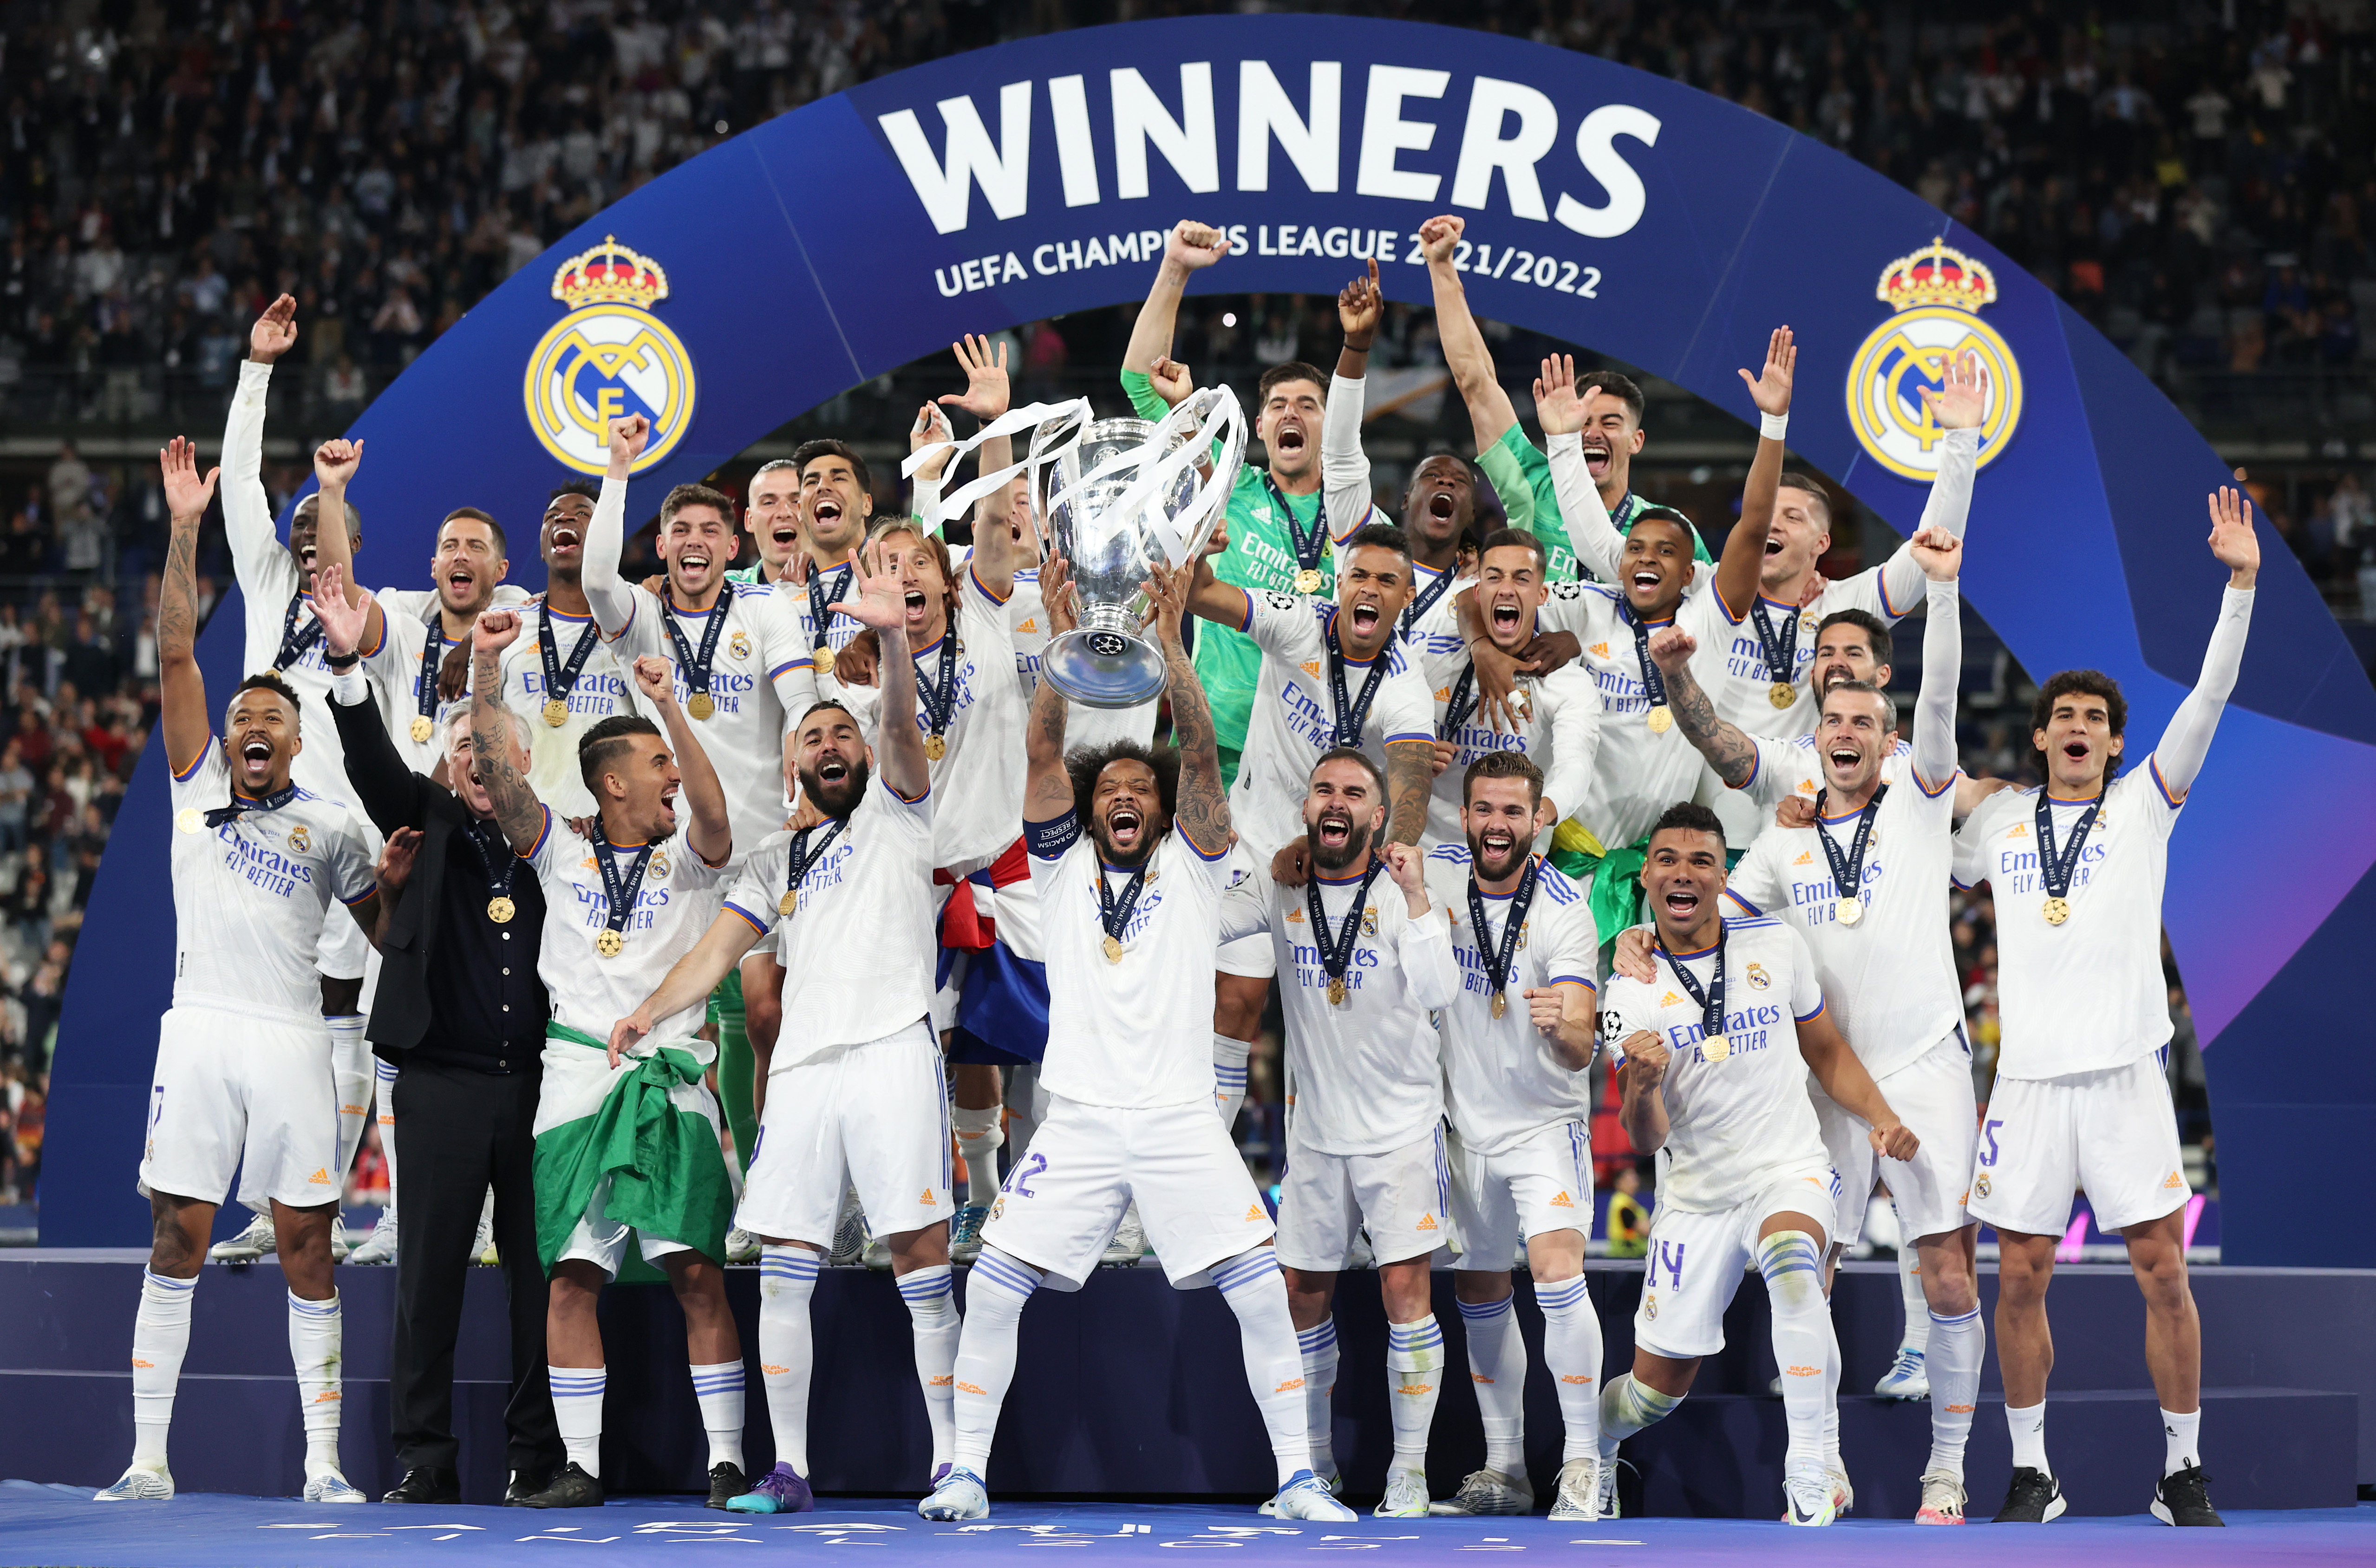 Кубок россии финал 2024 где будет проходить. Реал Мадрид победитель Лиги чемпионов 2022. Реал Мадрид с Кубком ЛЧ 2022. Лига чемпионов 2021-2022 Реал Мадрид. Реал Мадрид выиграл Лигу чемпионов 2021-2022.